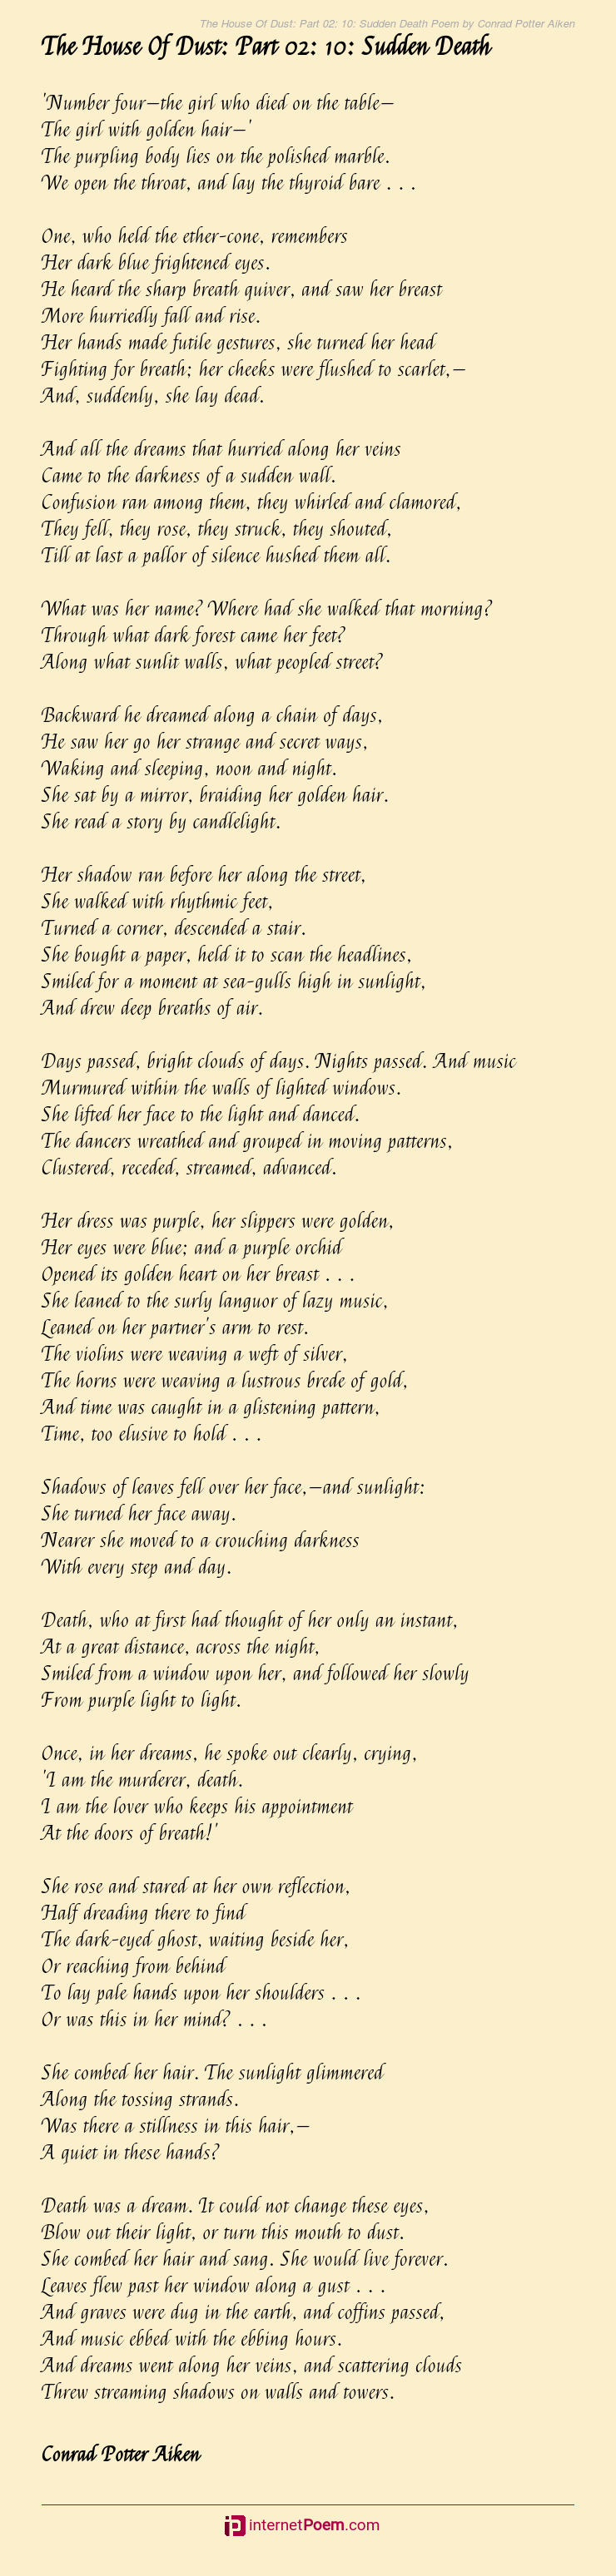 Dark Lies The Island Poem Analysis